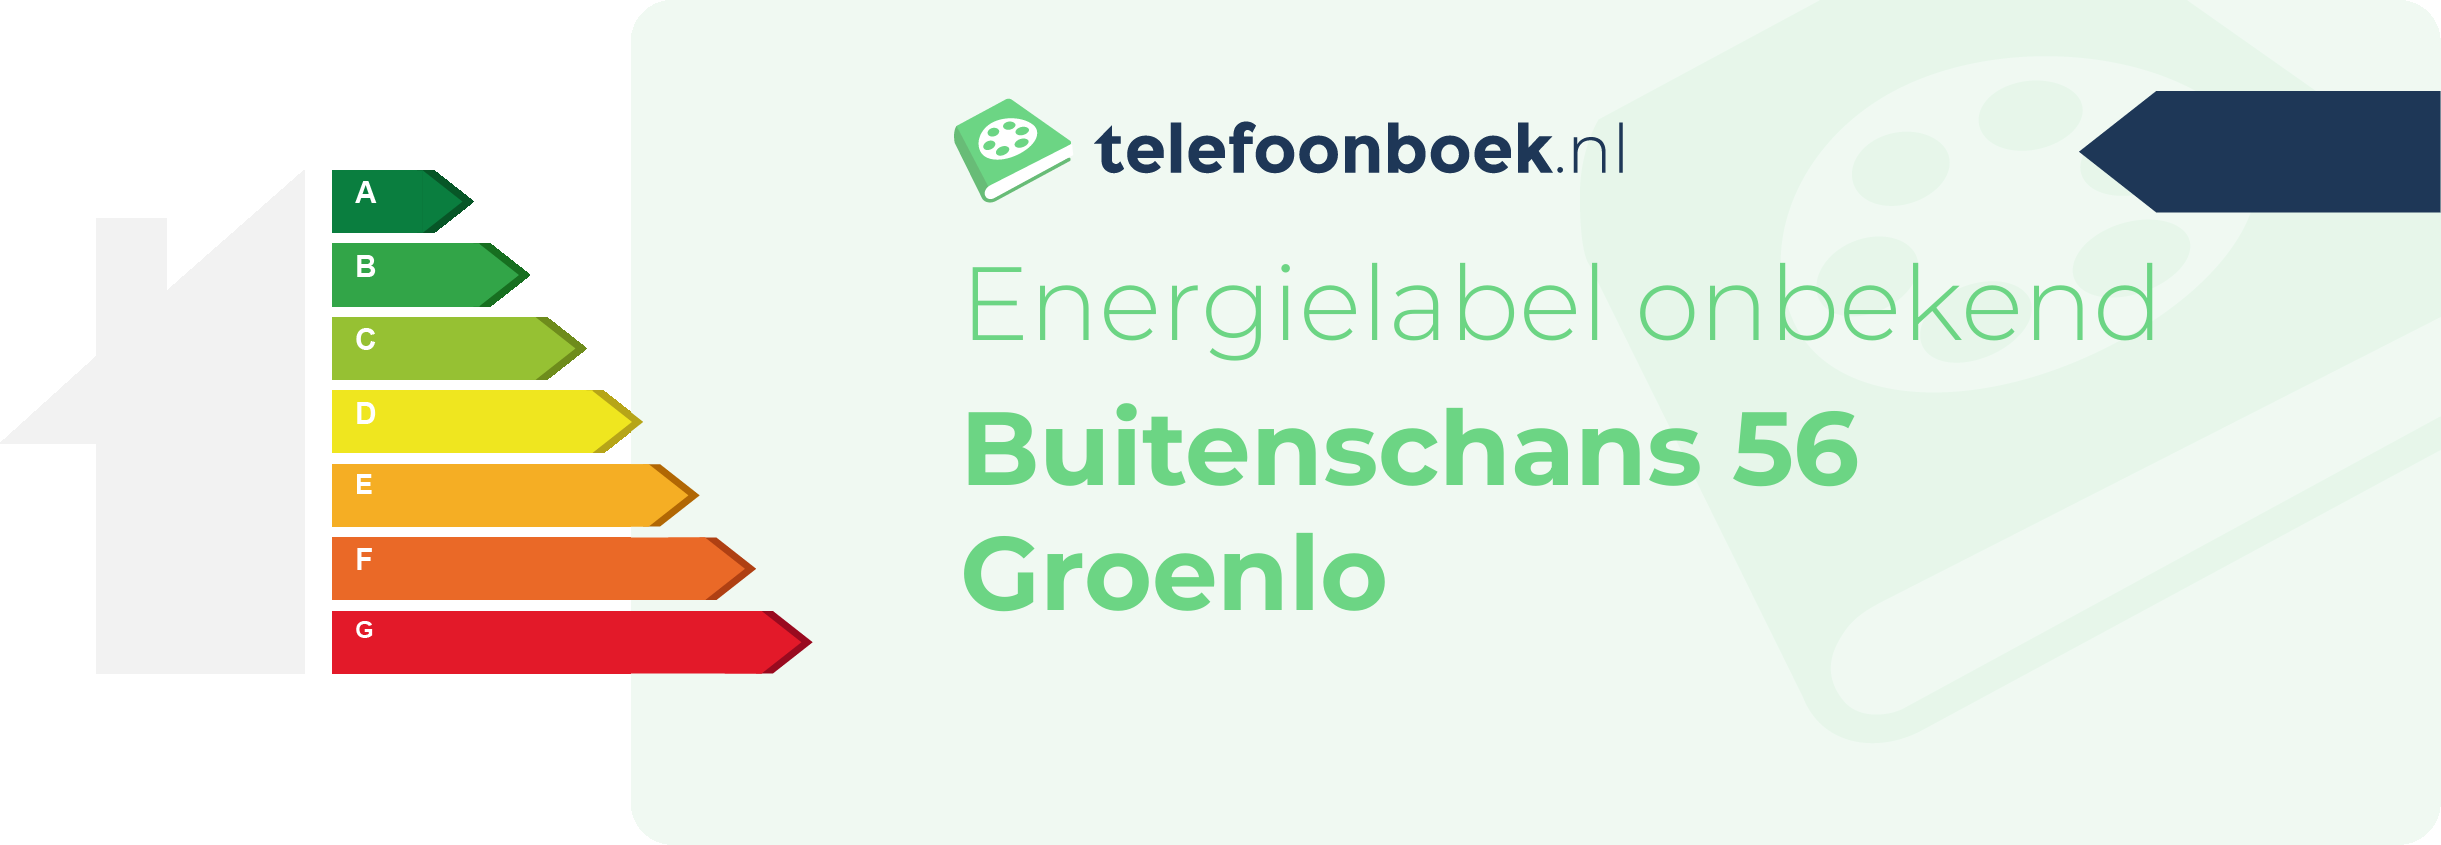 Energielabel Buitenschans 56 Groenlo